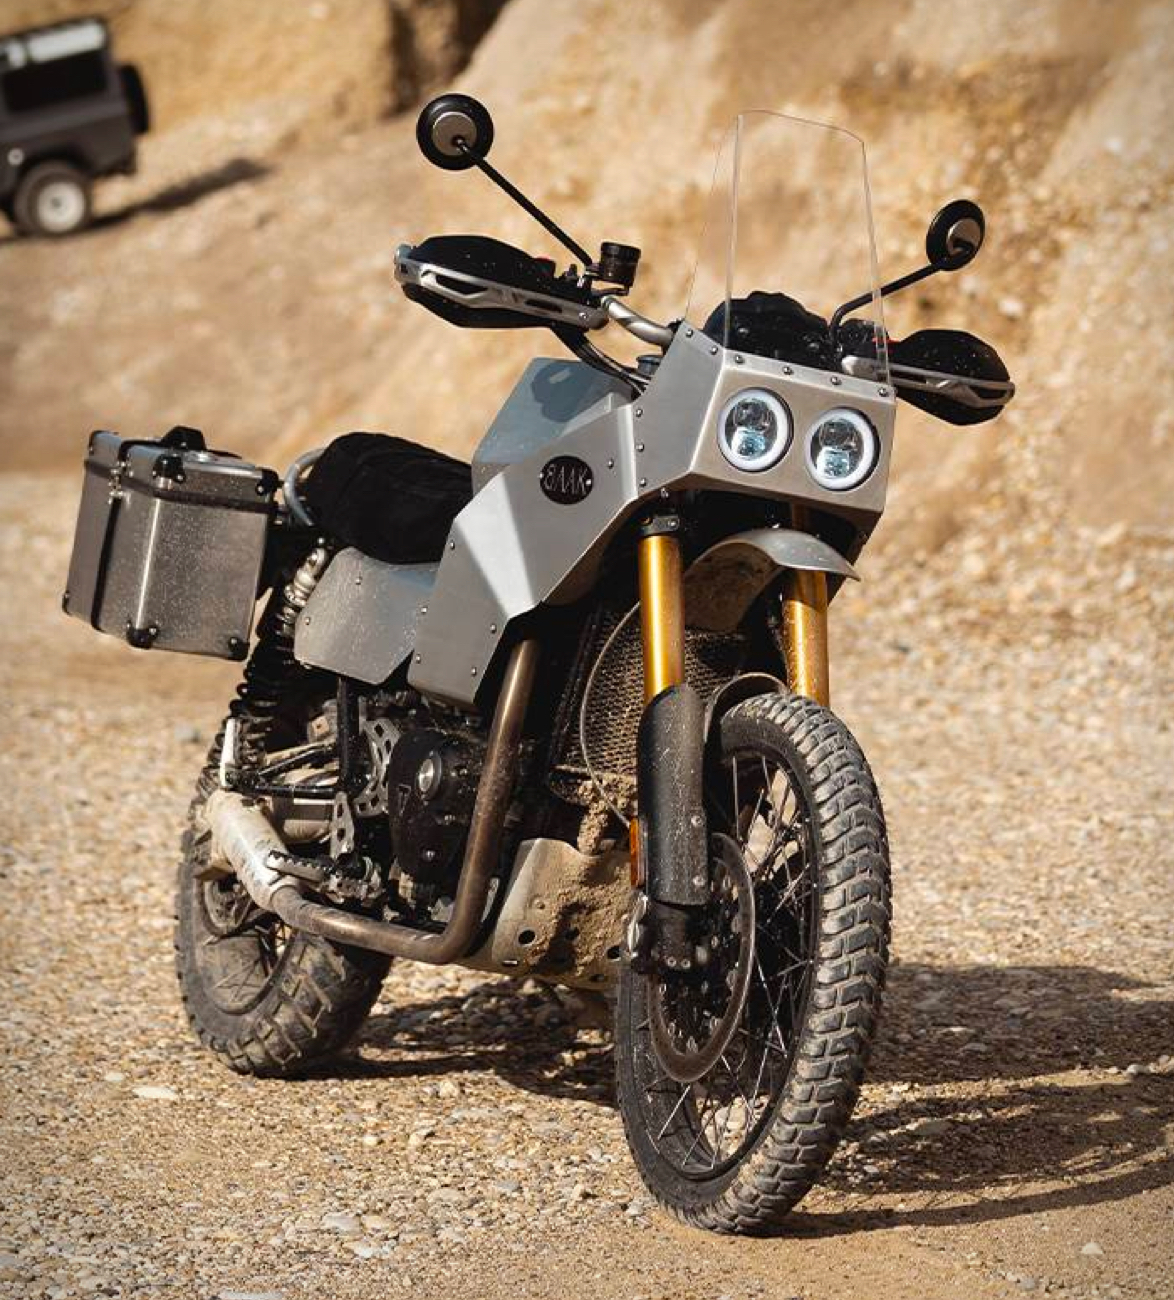 baak-1200-aventures-motorcycle-6.jpg